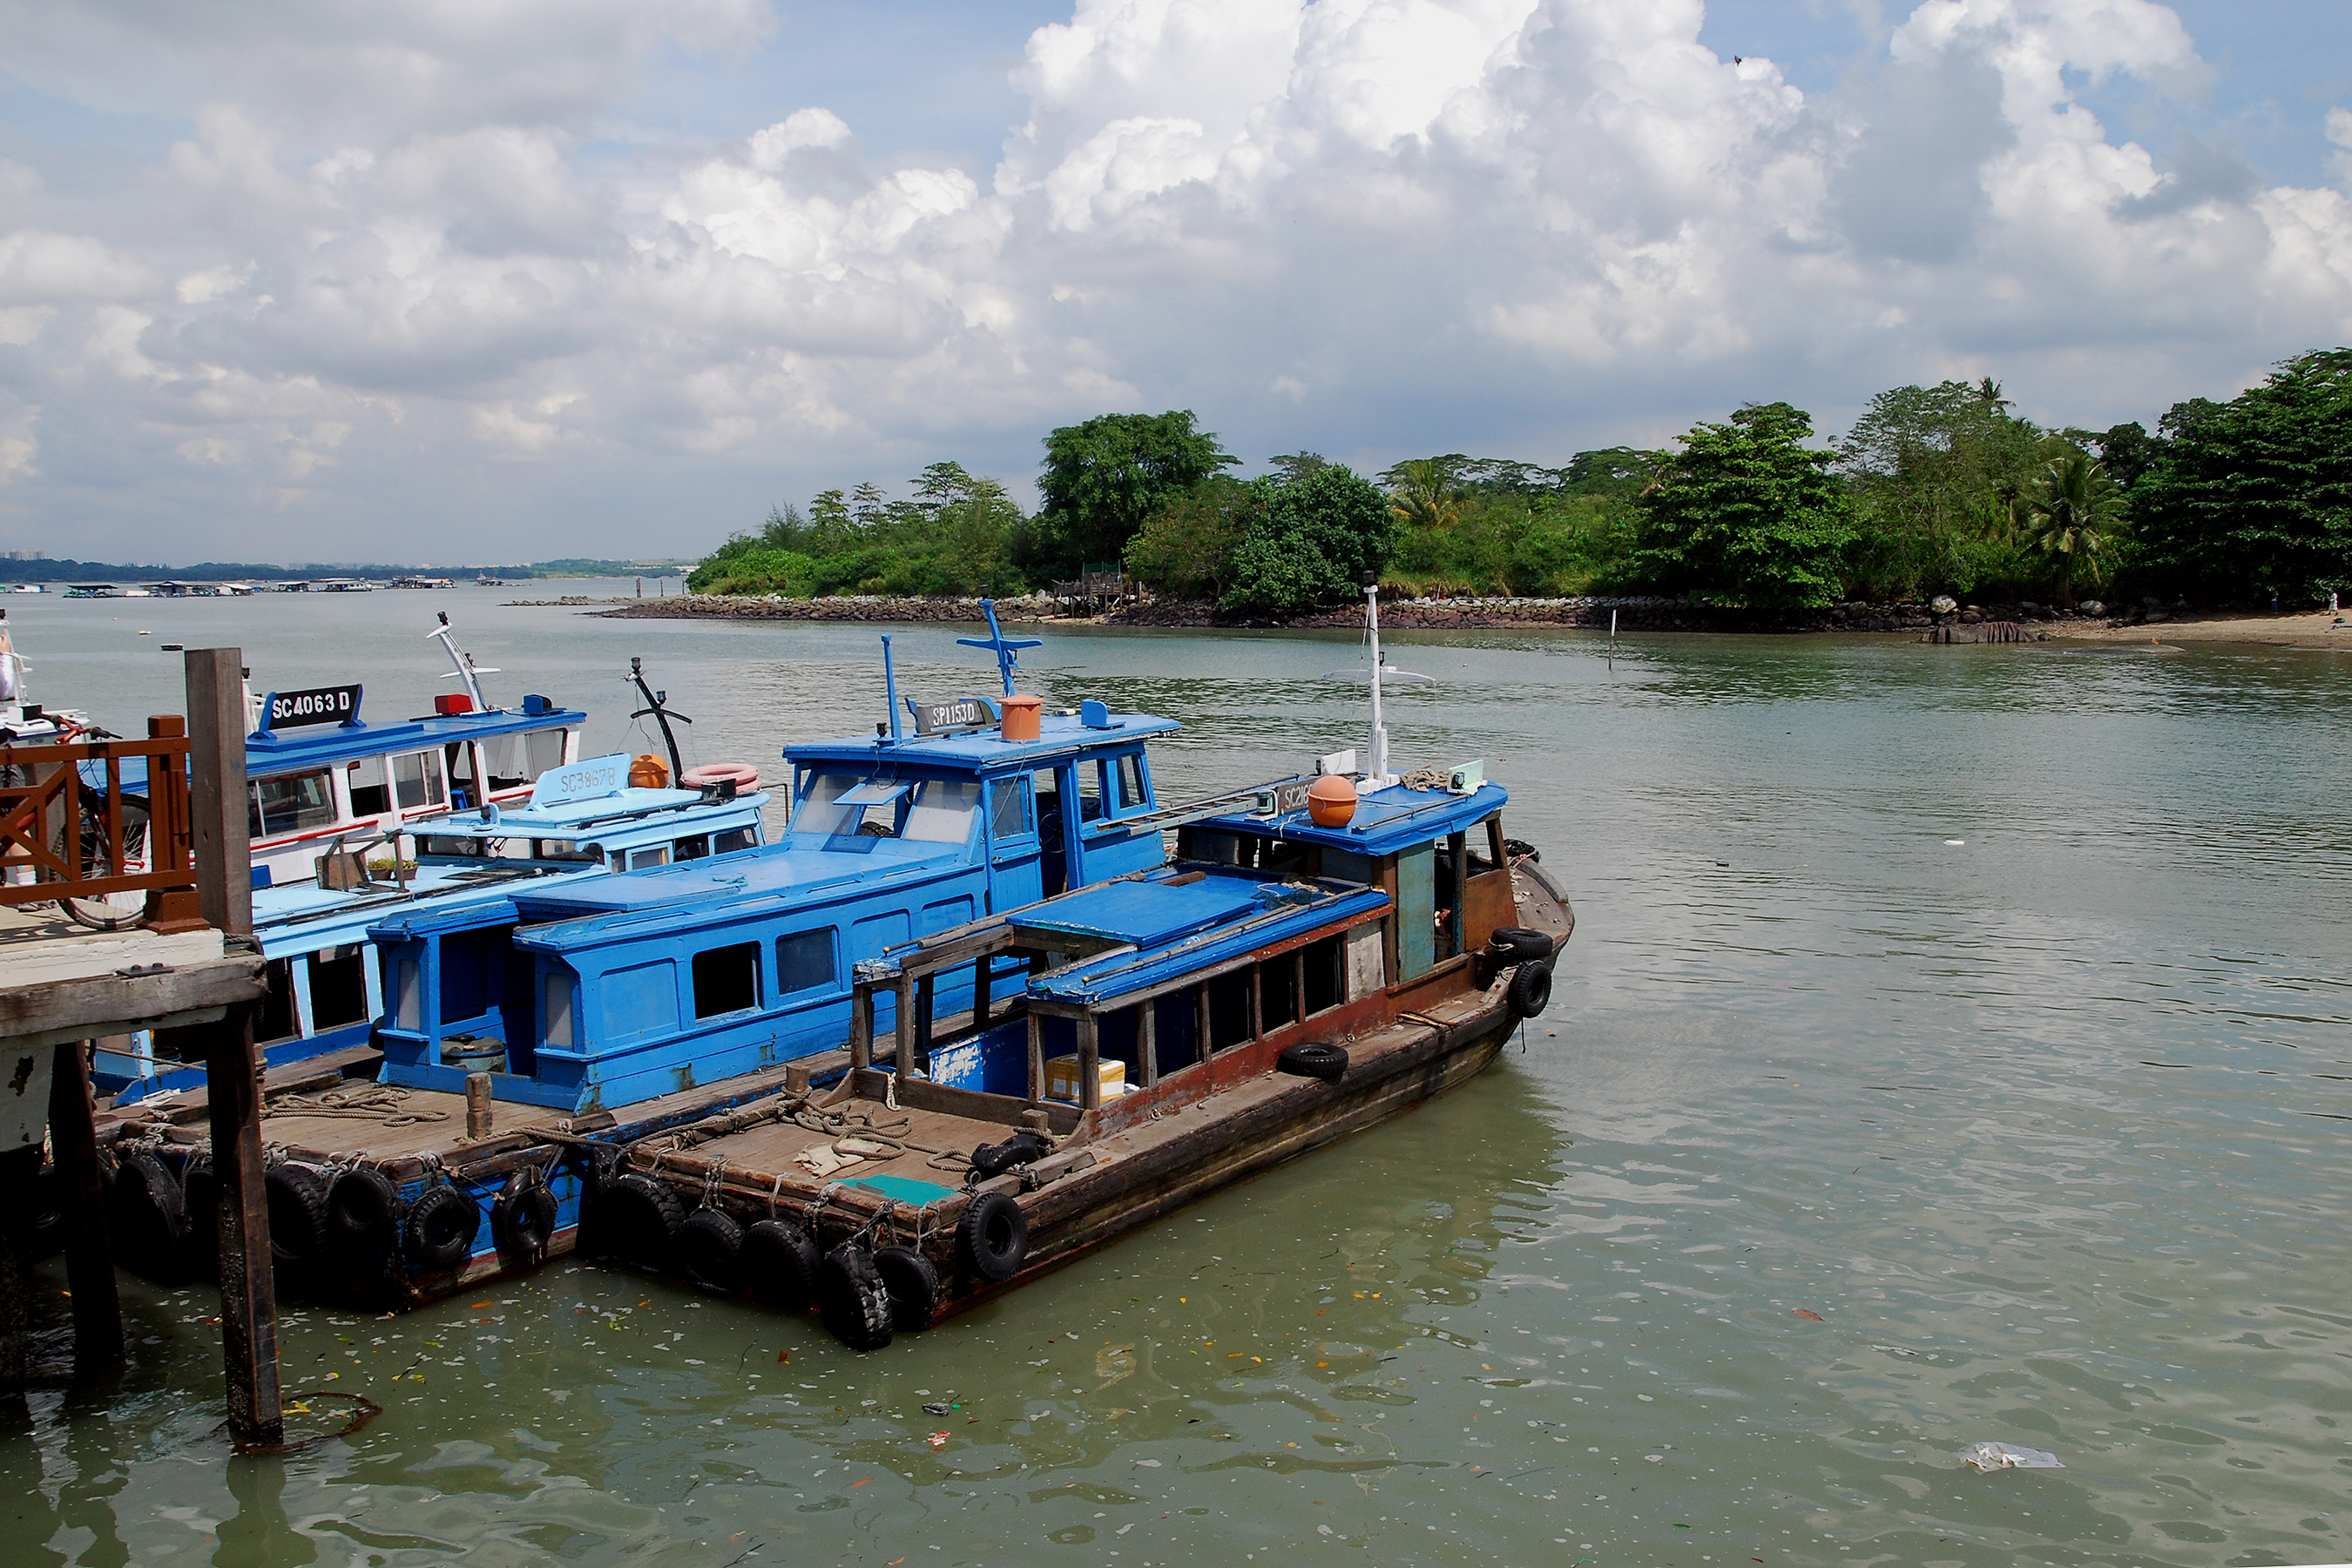 Boat ride from Pulau Ubin